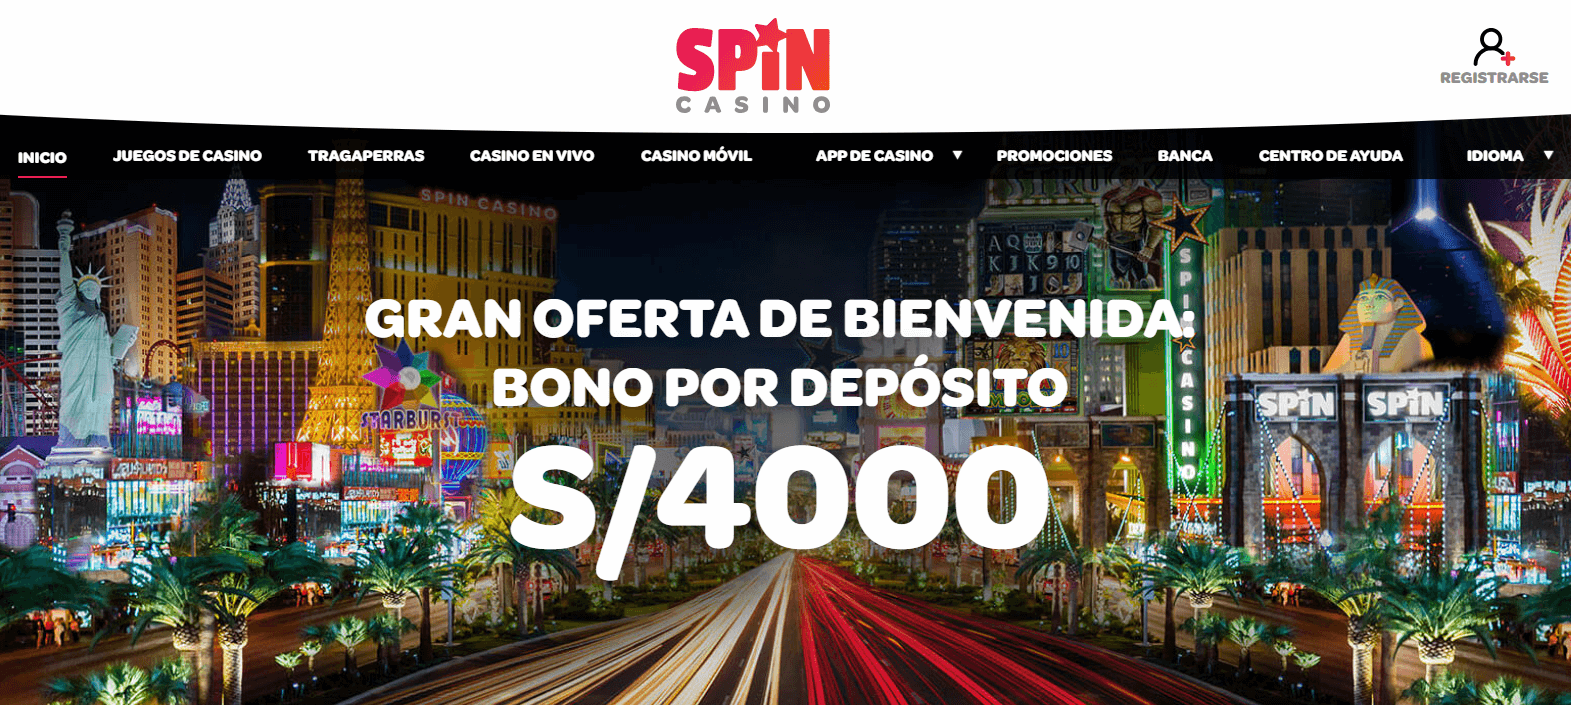 Spin Casino – Deposito Minimo de S40